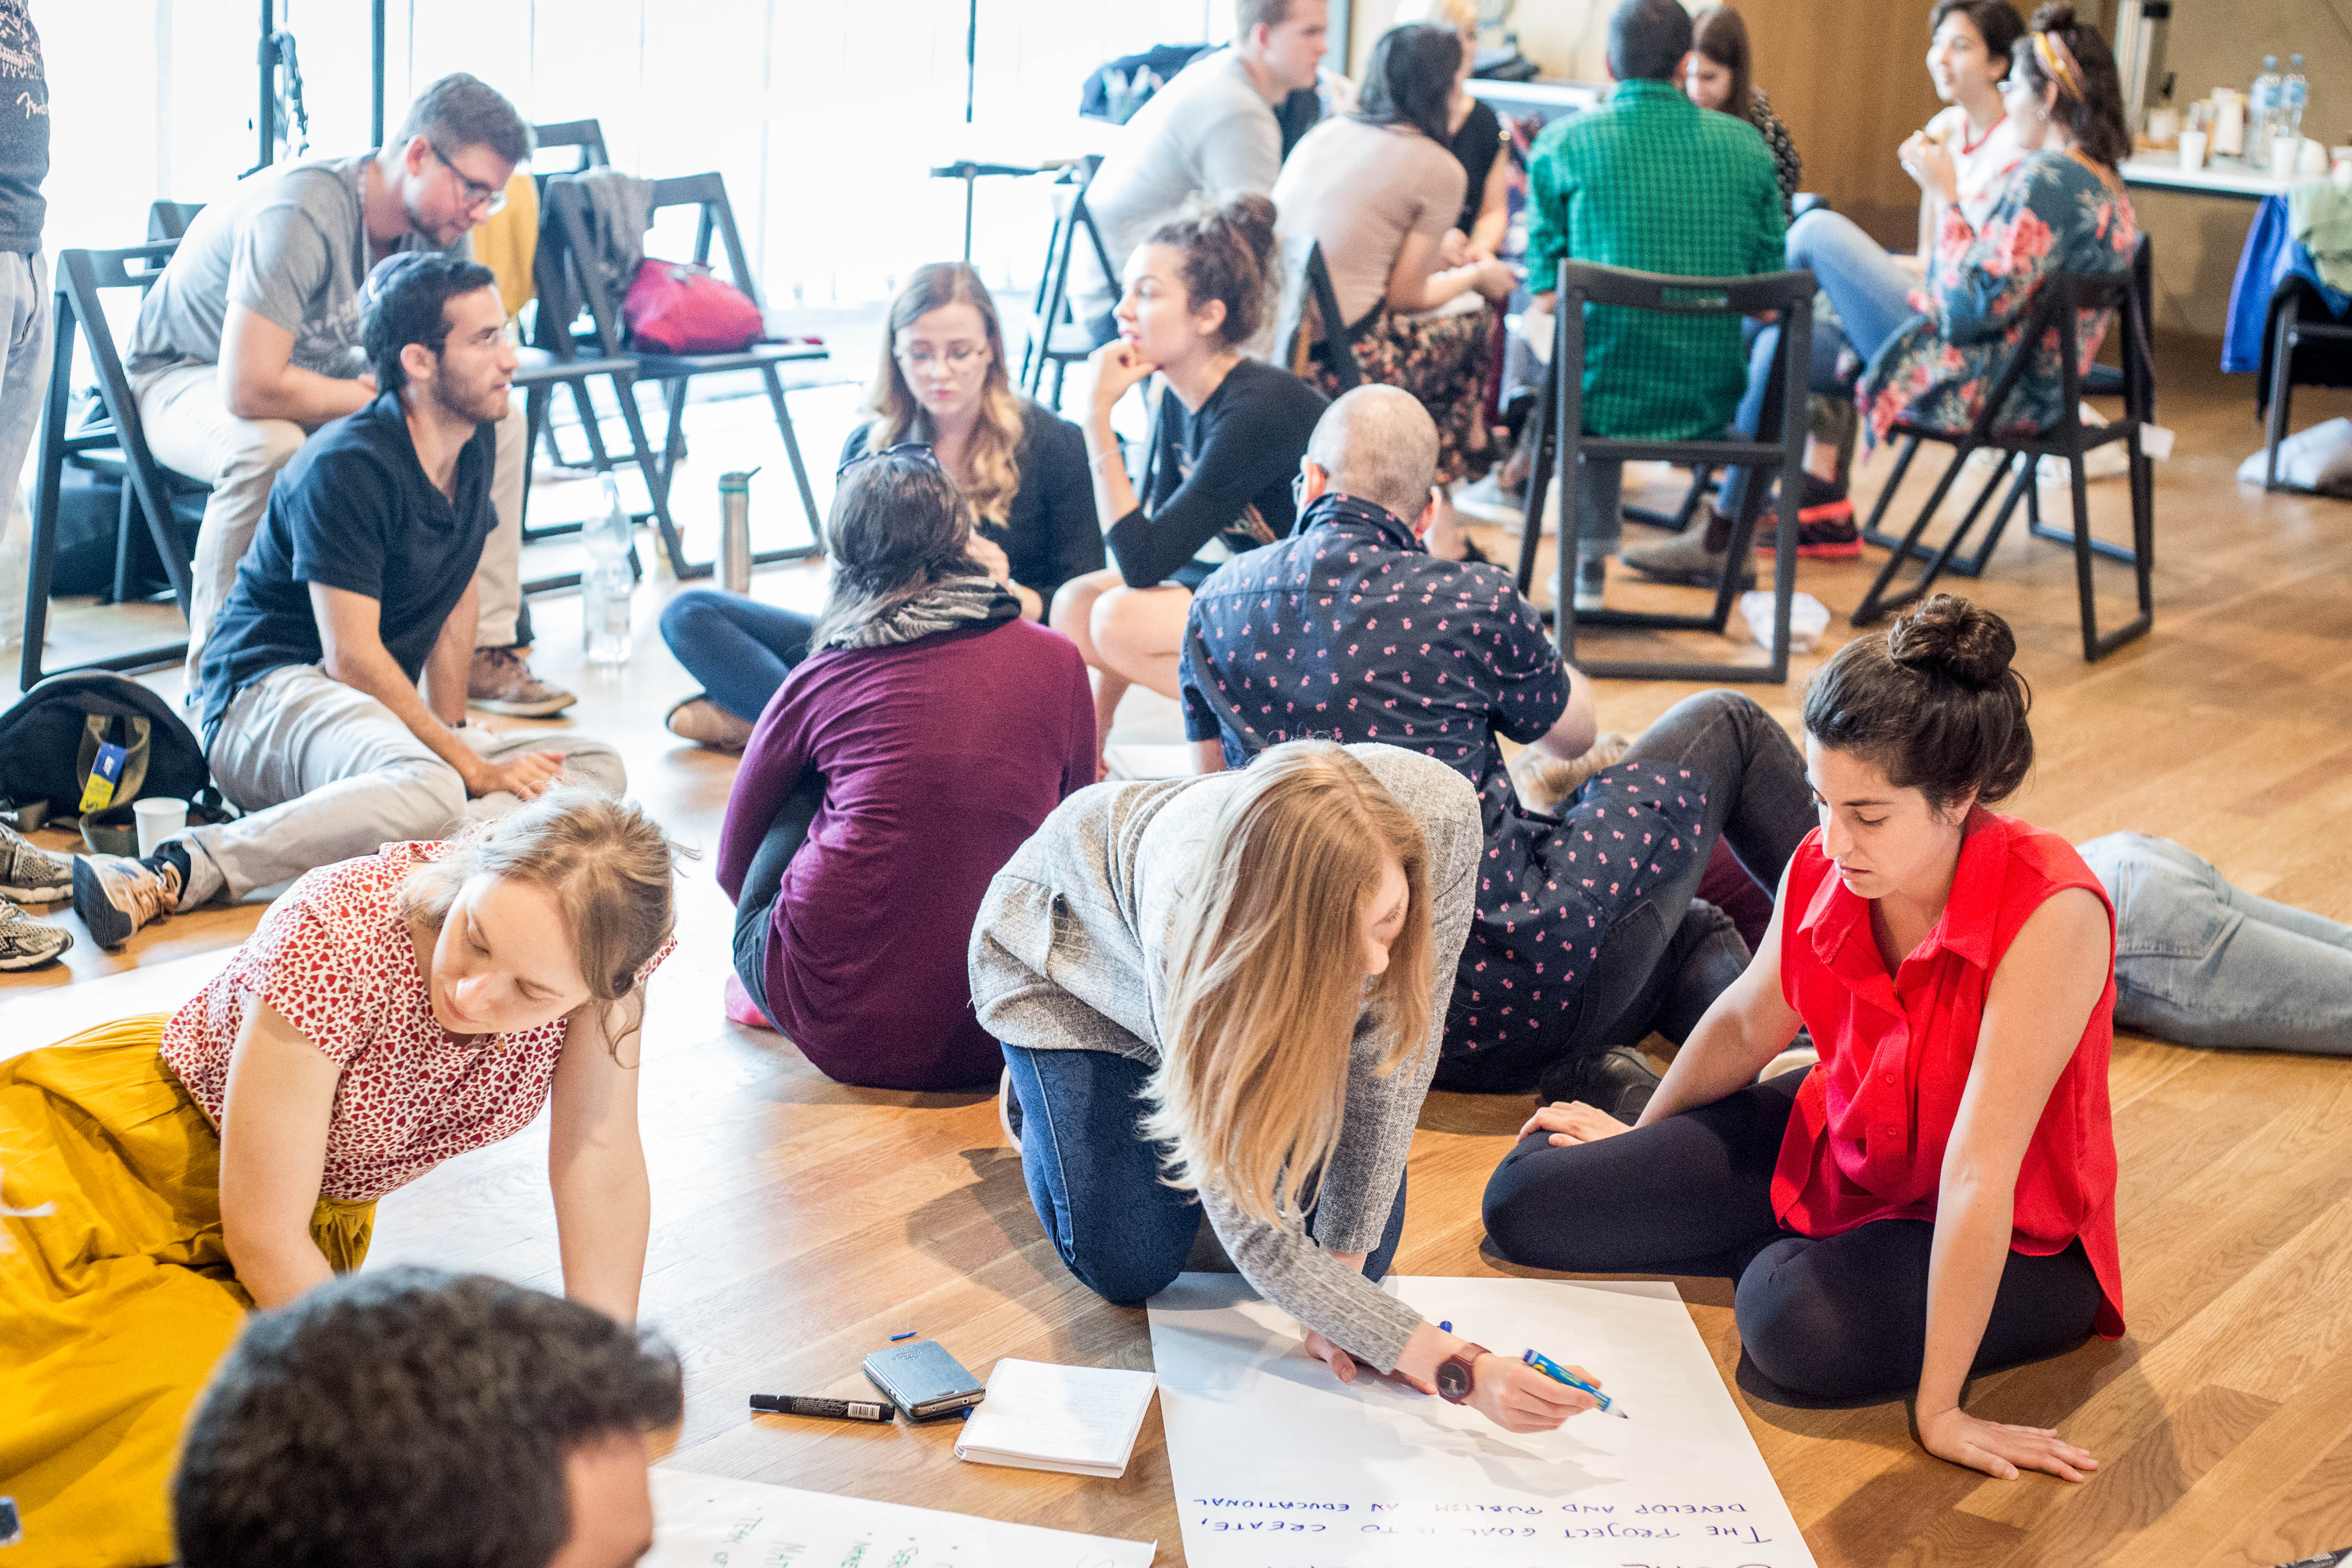 Uczestnicy PIYE 2019 siedzą na podłodze w sali podczas sesji warsztatowej, pracują przy dużych arkuszach papieru i notują